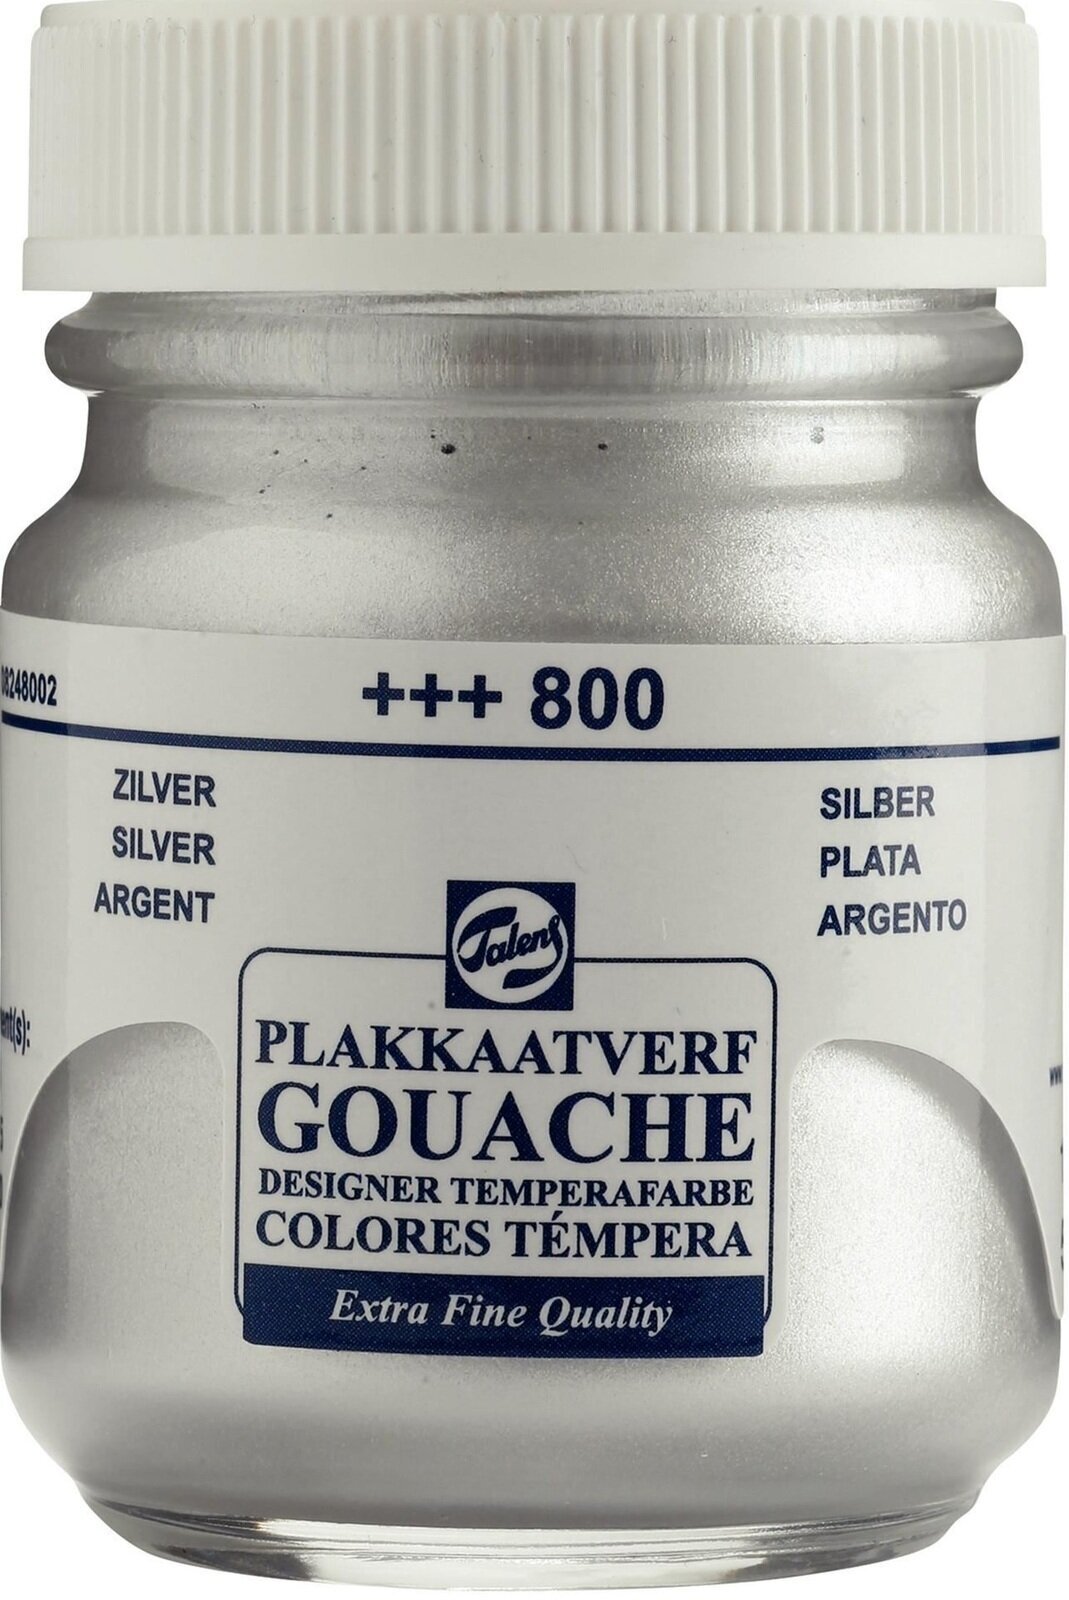 Gouache Paint Talens Gouache Extra Fine Gouache Paint 50 ml Silver